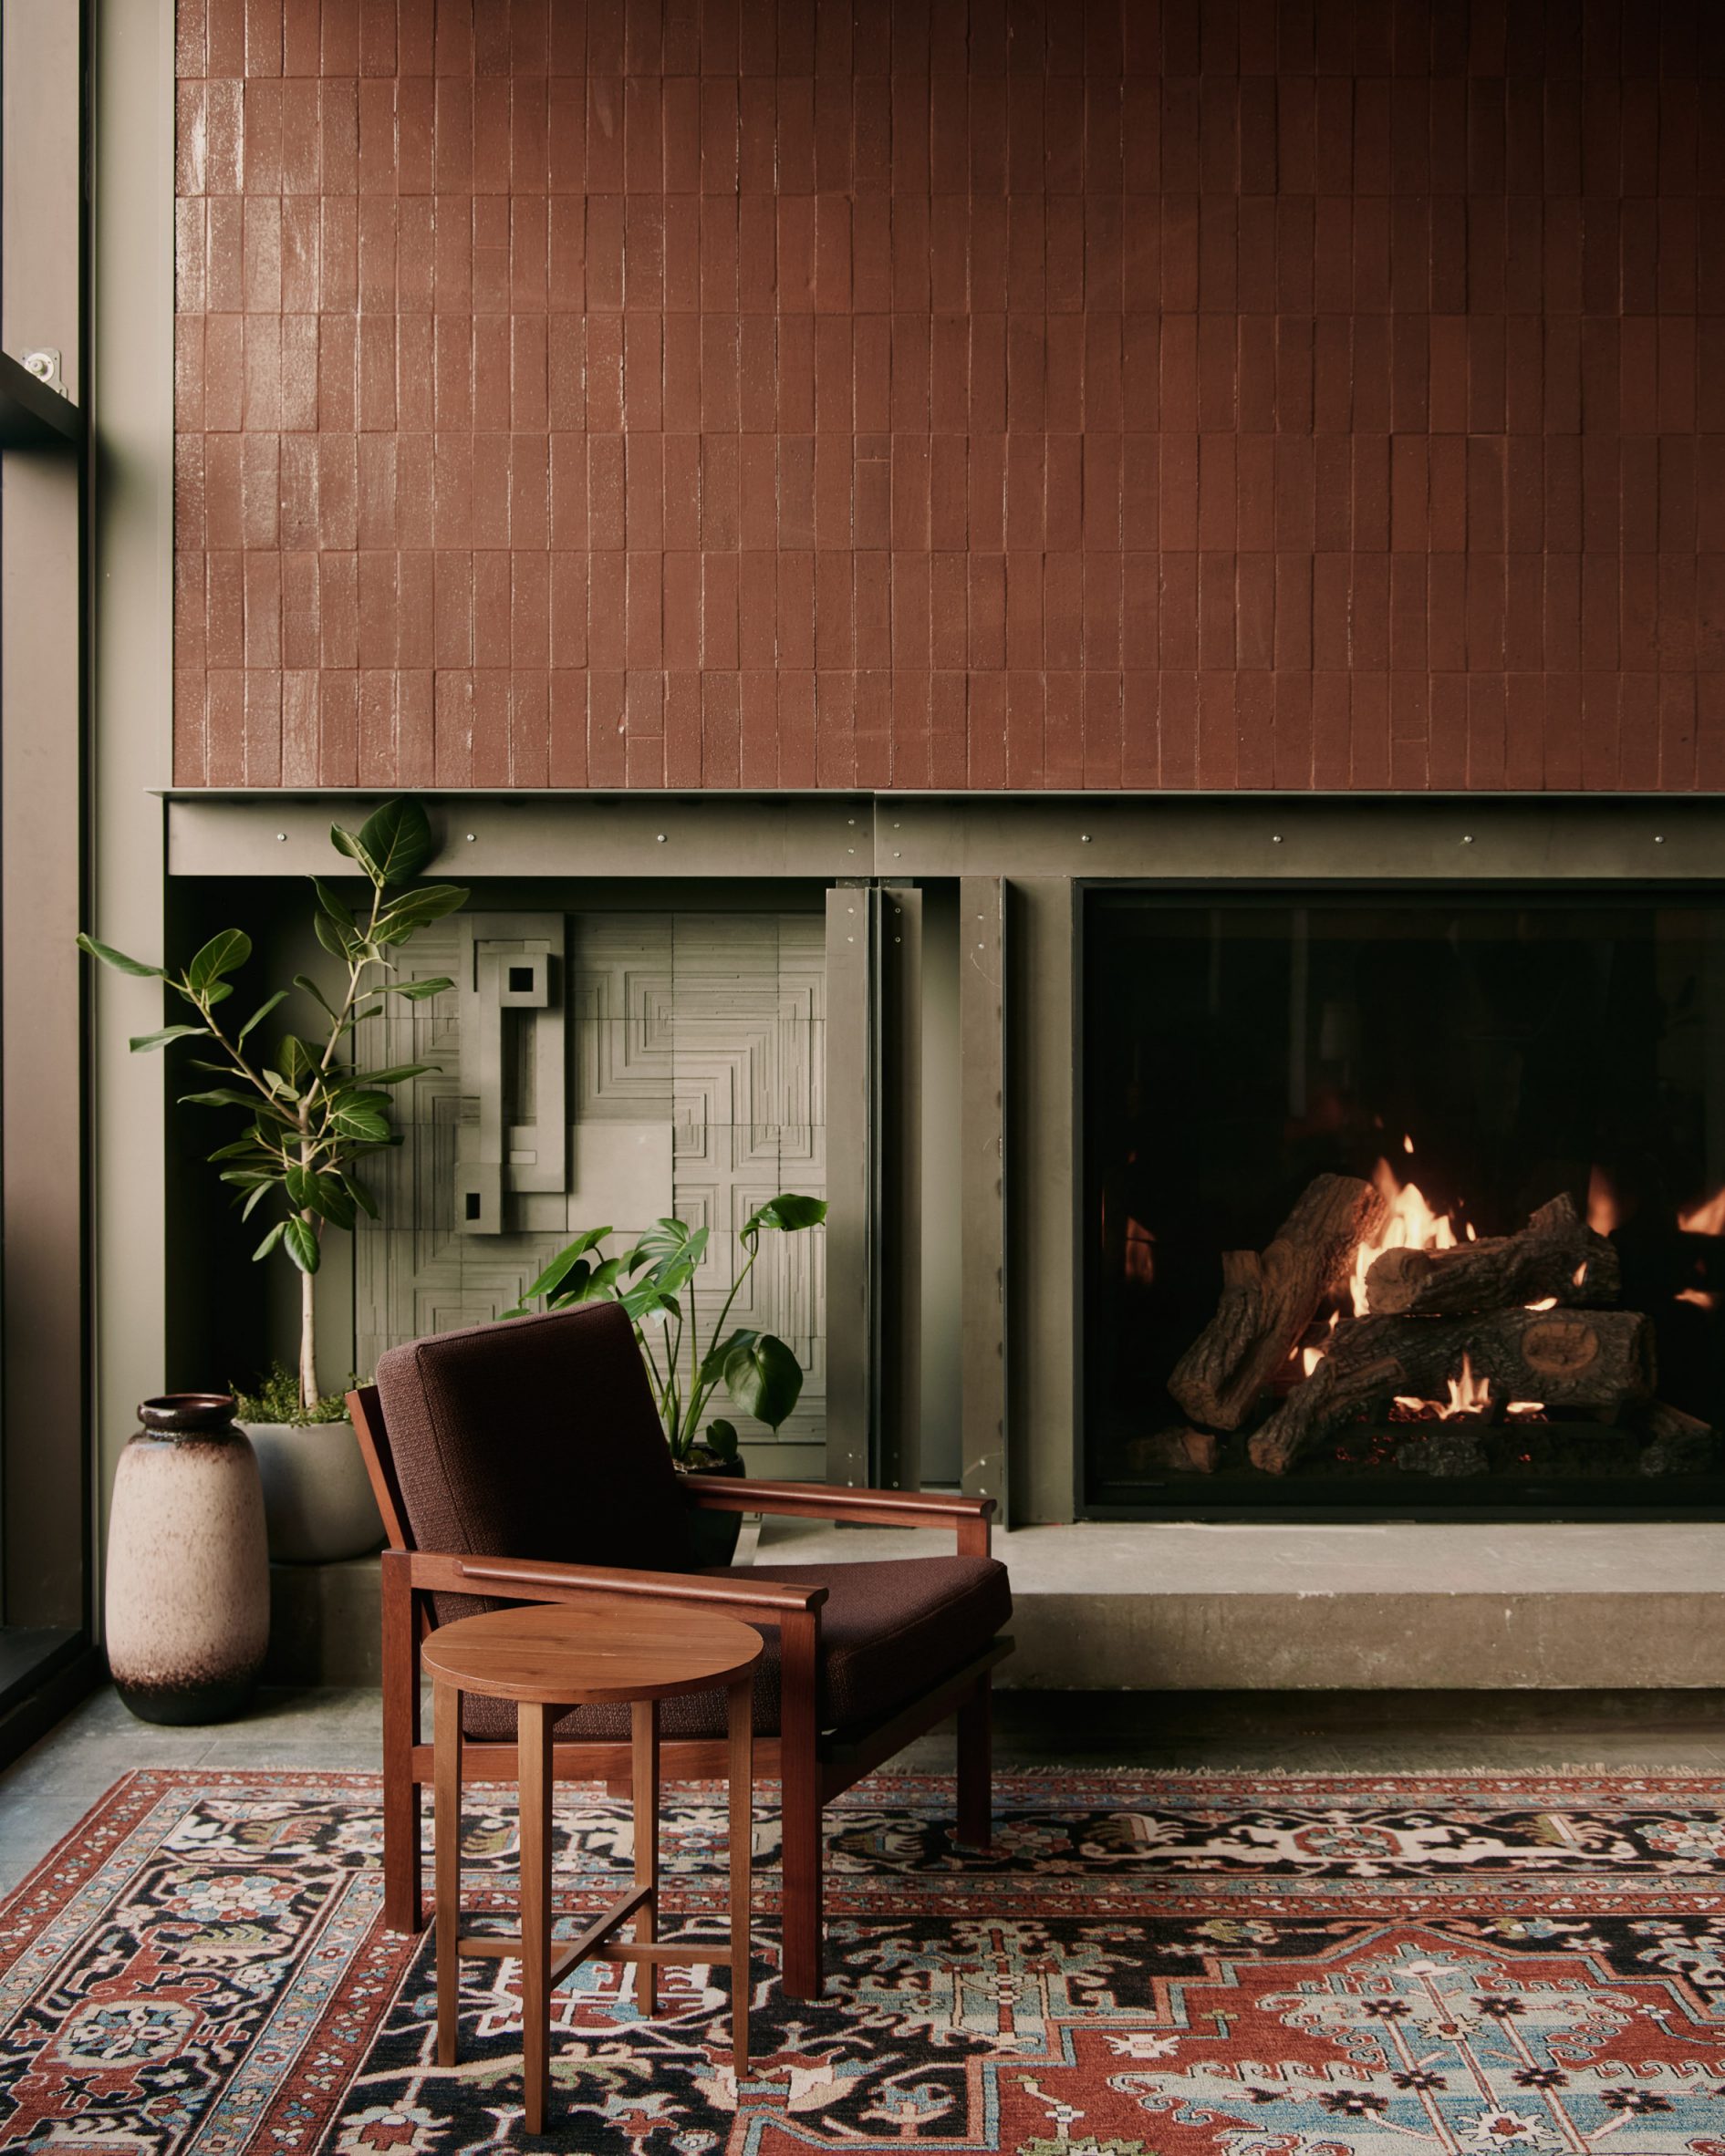 Custom ceramic tiles framing the fireplace